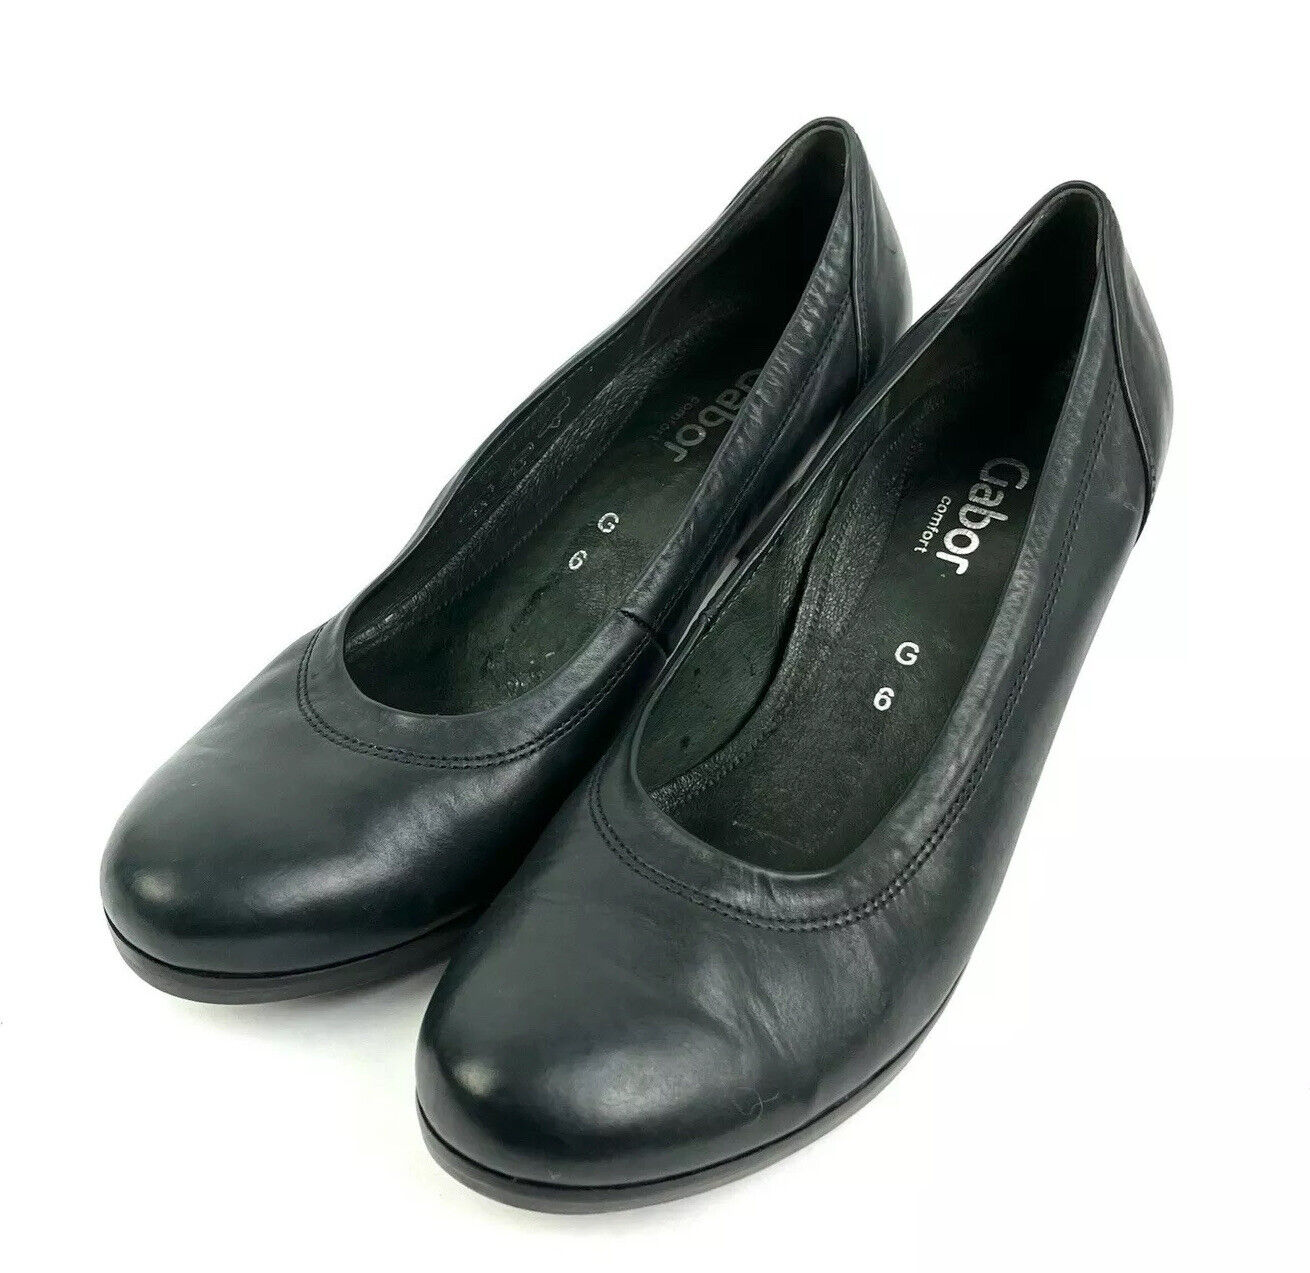 Isoleren academisch Ringlet Gabor Heels 8 Black Leather Slip On Shoe Pumps Womens Comfort | eBay